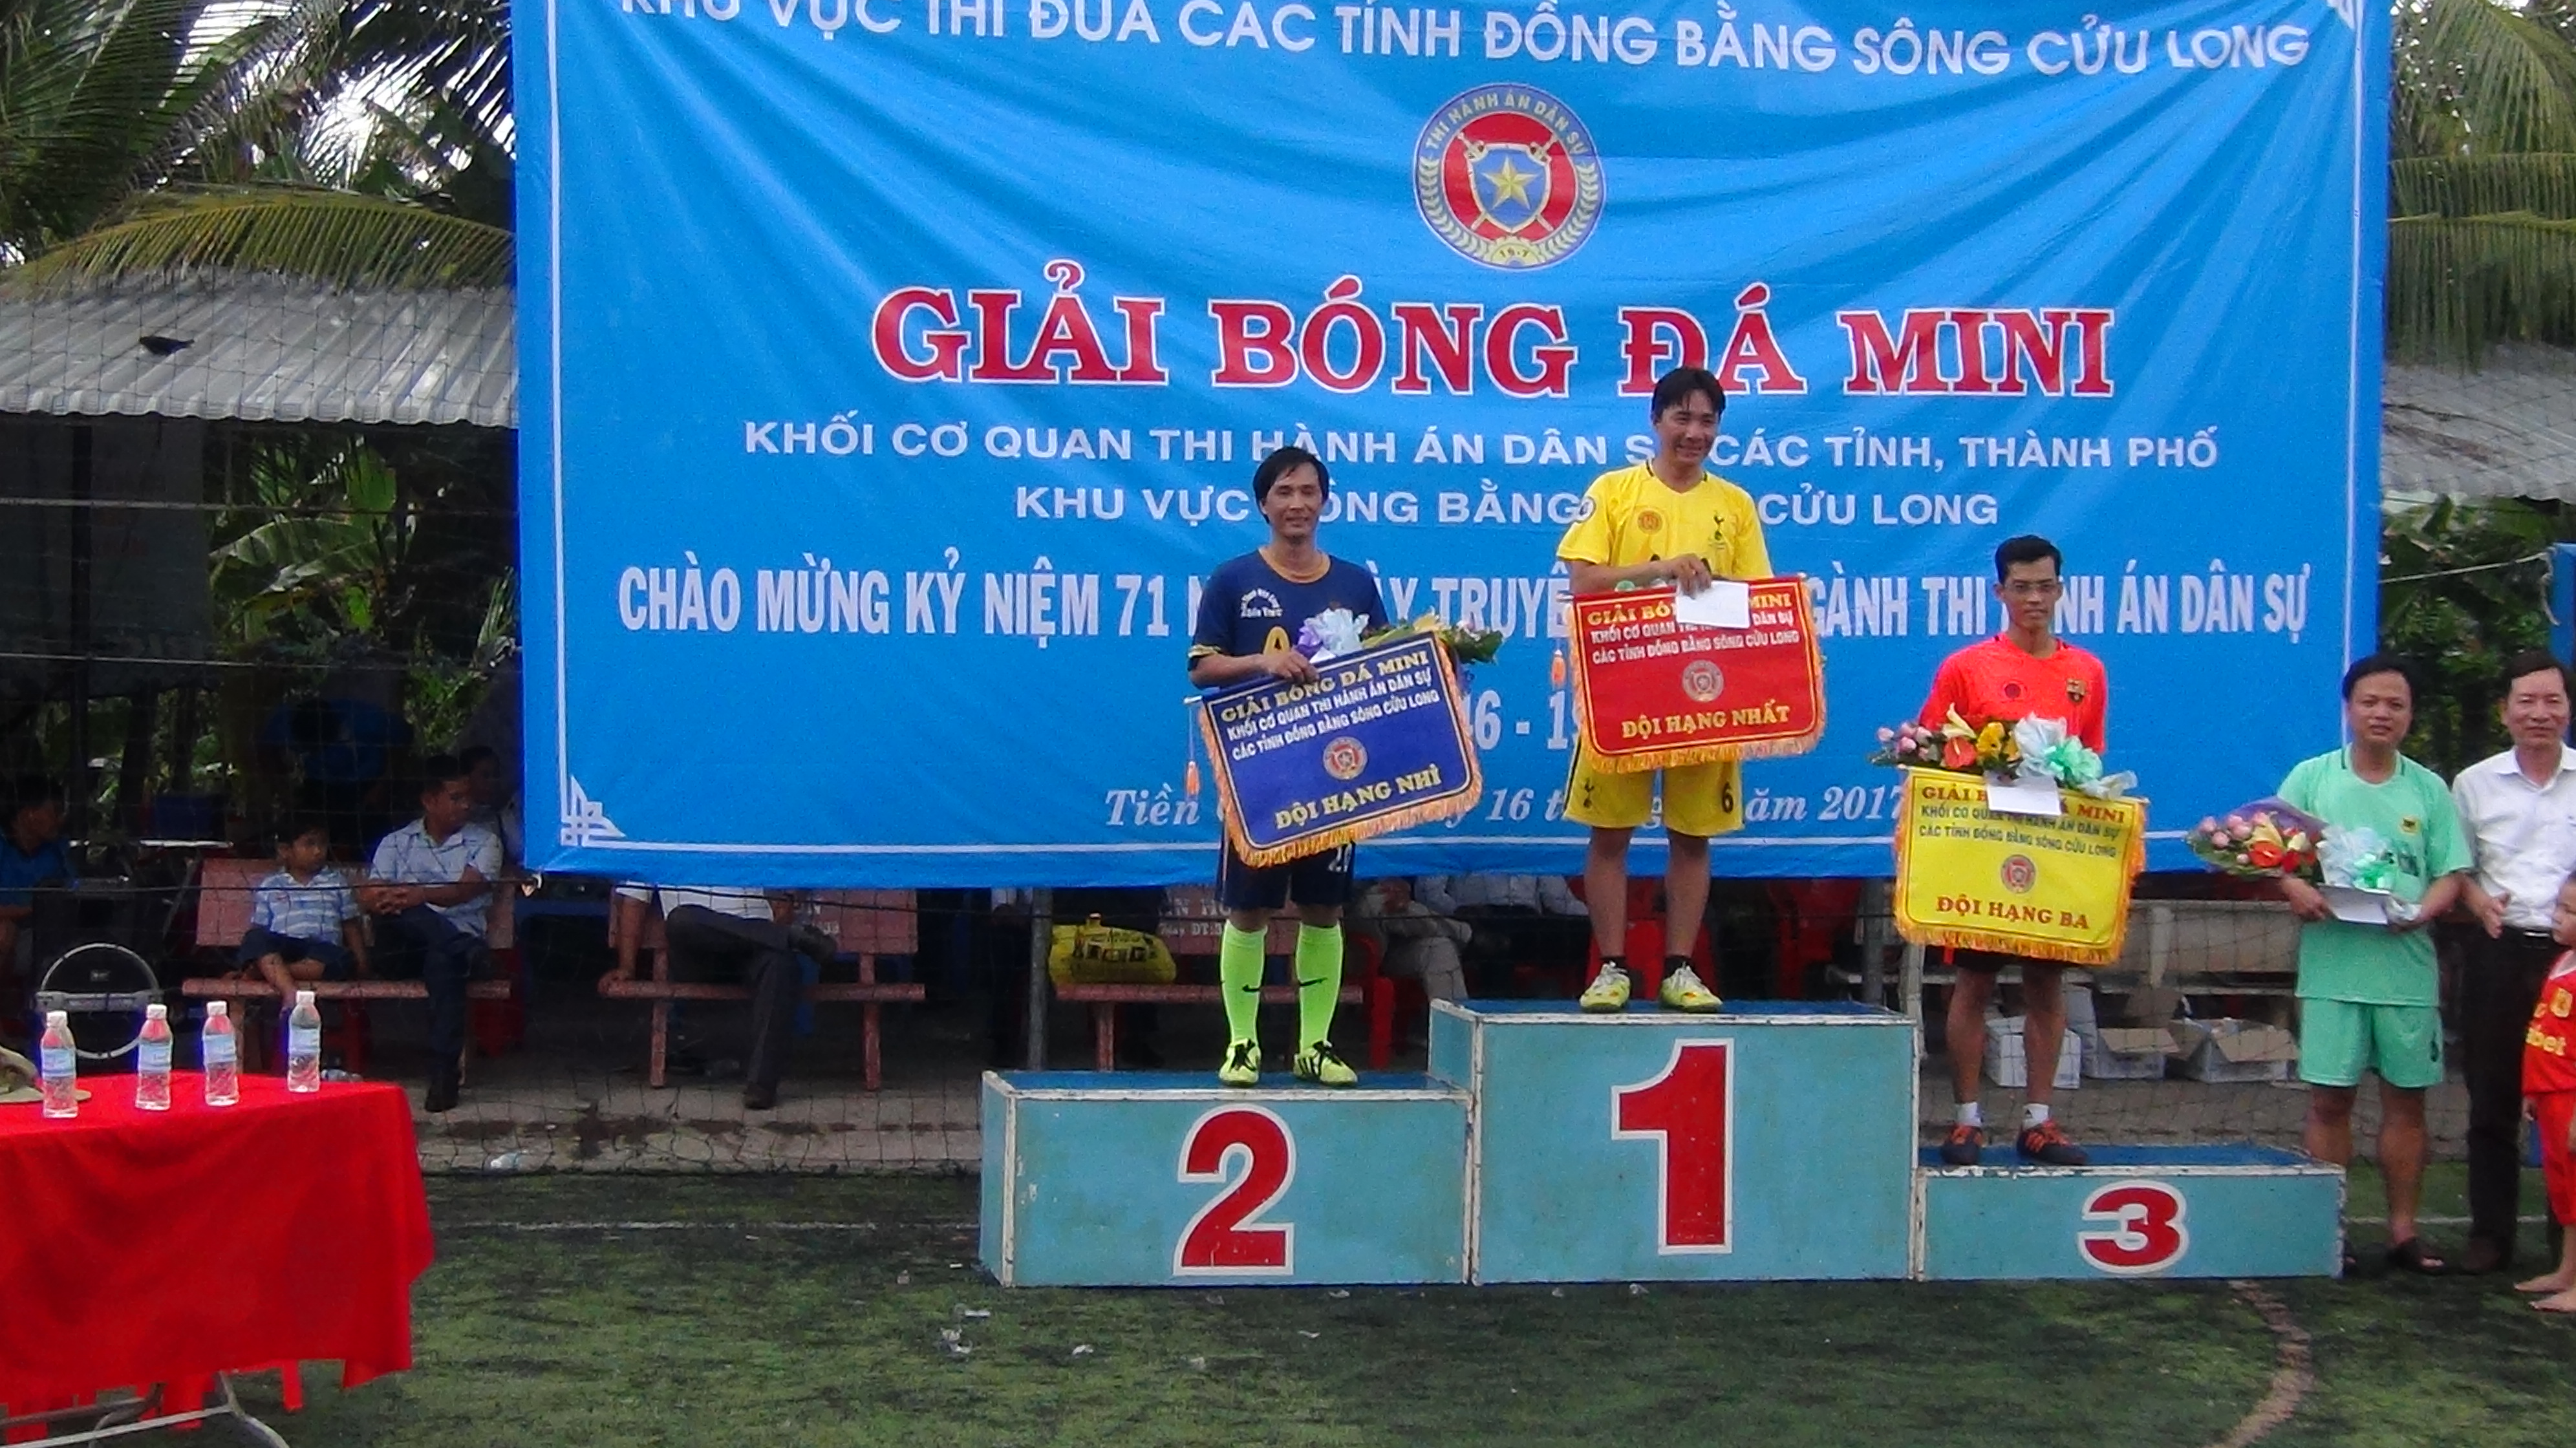 Cục Thi hành án dân sự tỉnh Tiền Giang tổ chức giải bóng đá mini - Khối cơ quan Thi hành án dân sự các tỉnh, thành phố khu vực Đồng Bằng Sông Cửu Long năm 2017